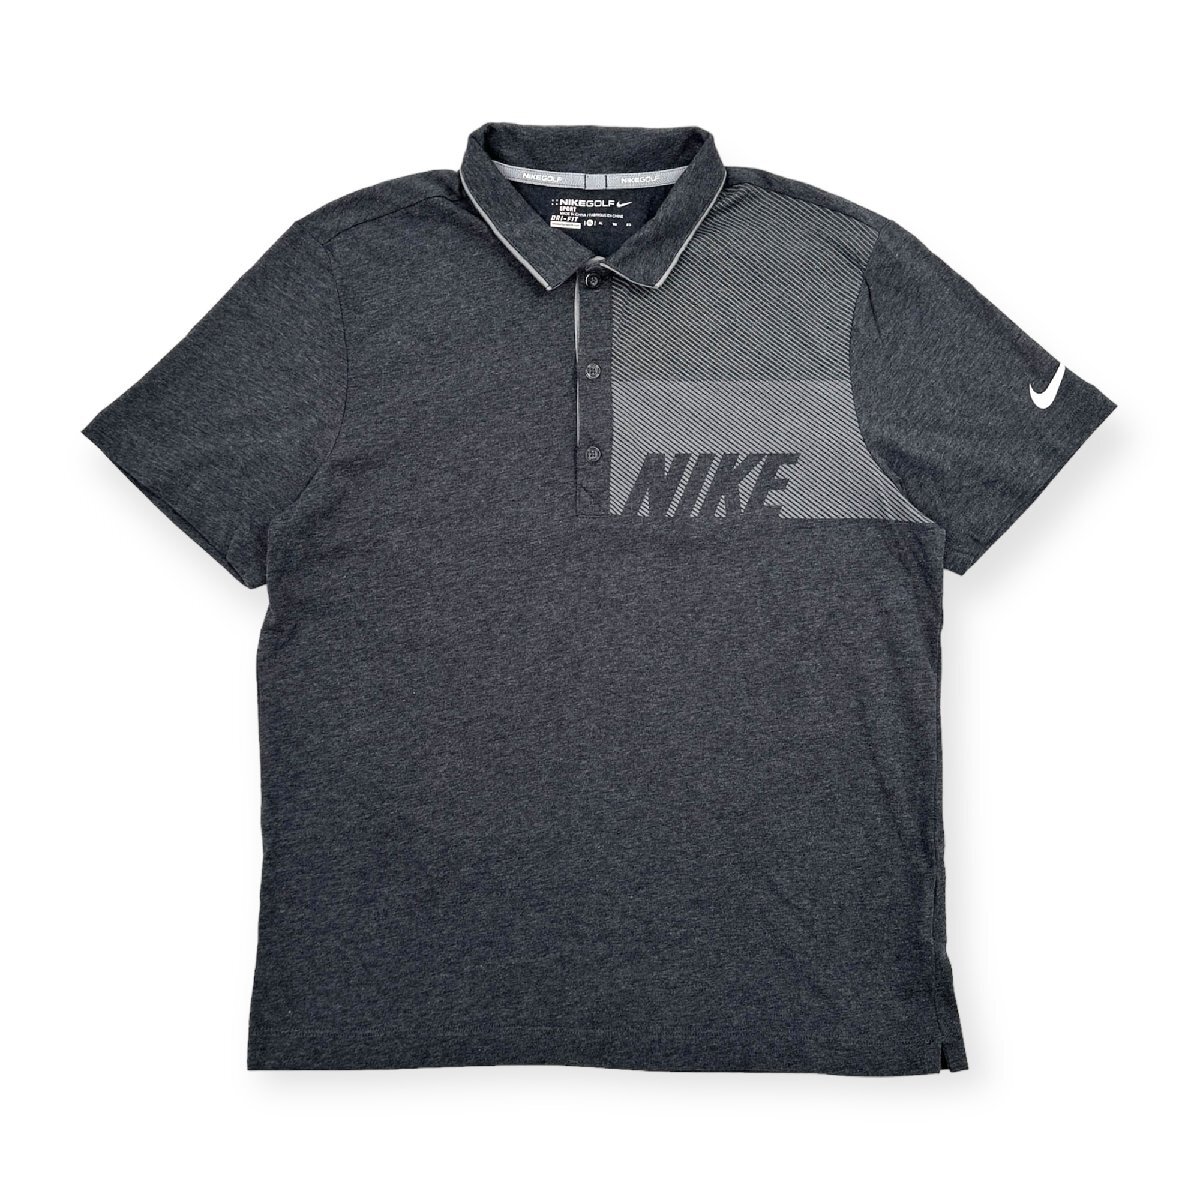 NIKE GOLF ナイキゴルフ DRI-FIT ストレッチ 半袖 ポロシャツ XLサイズ /グレー/メンズ/スポーツ_画像1